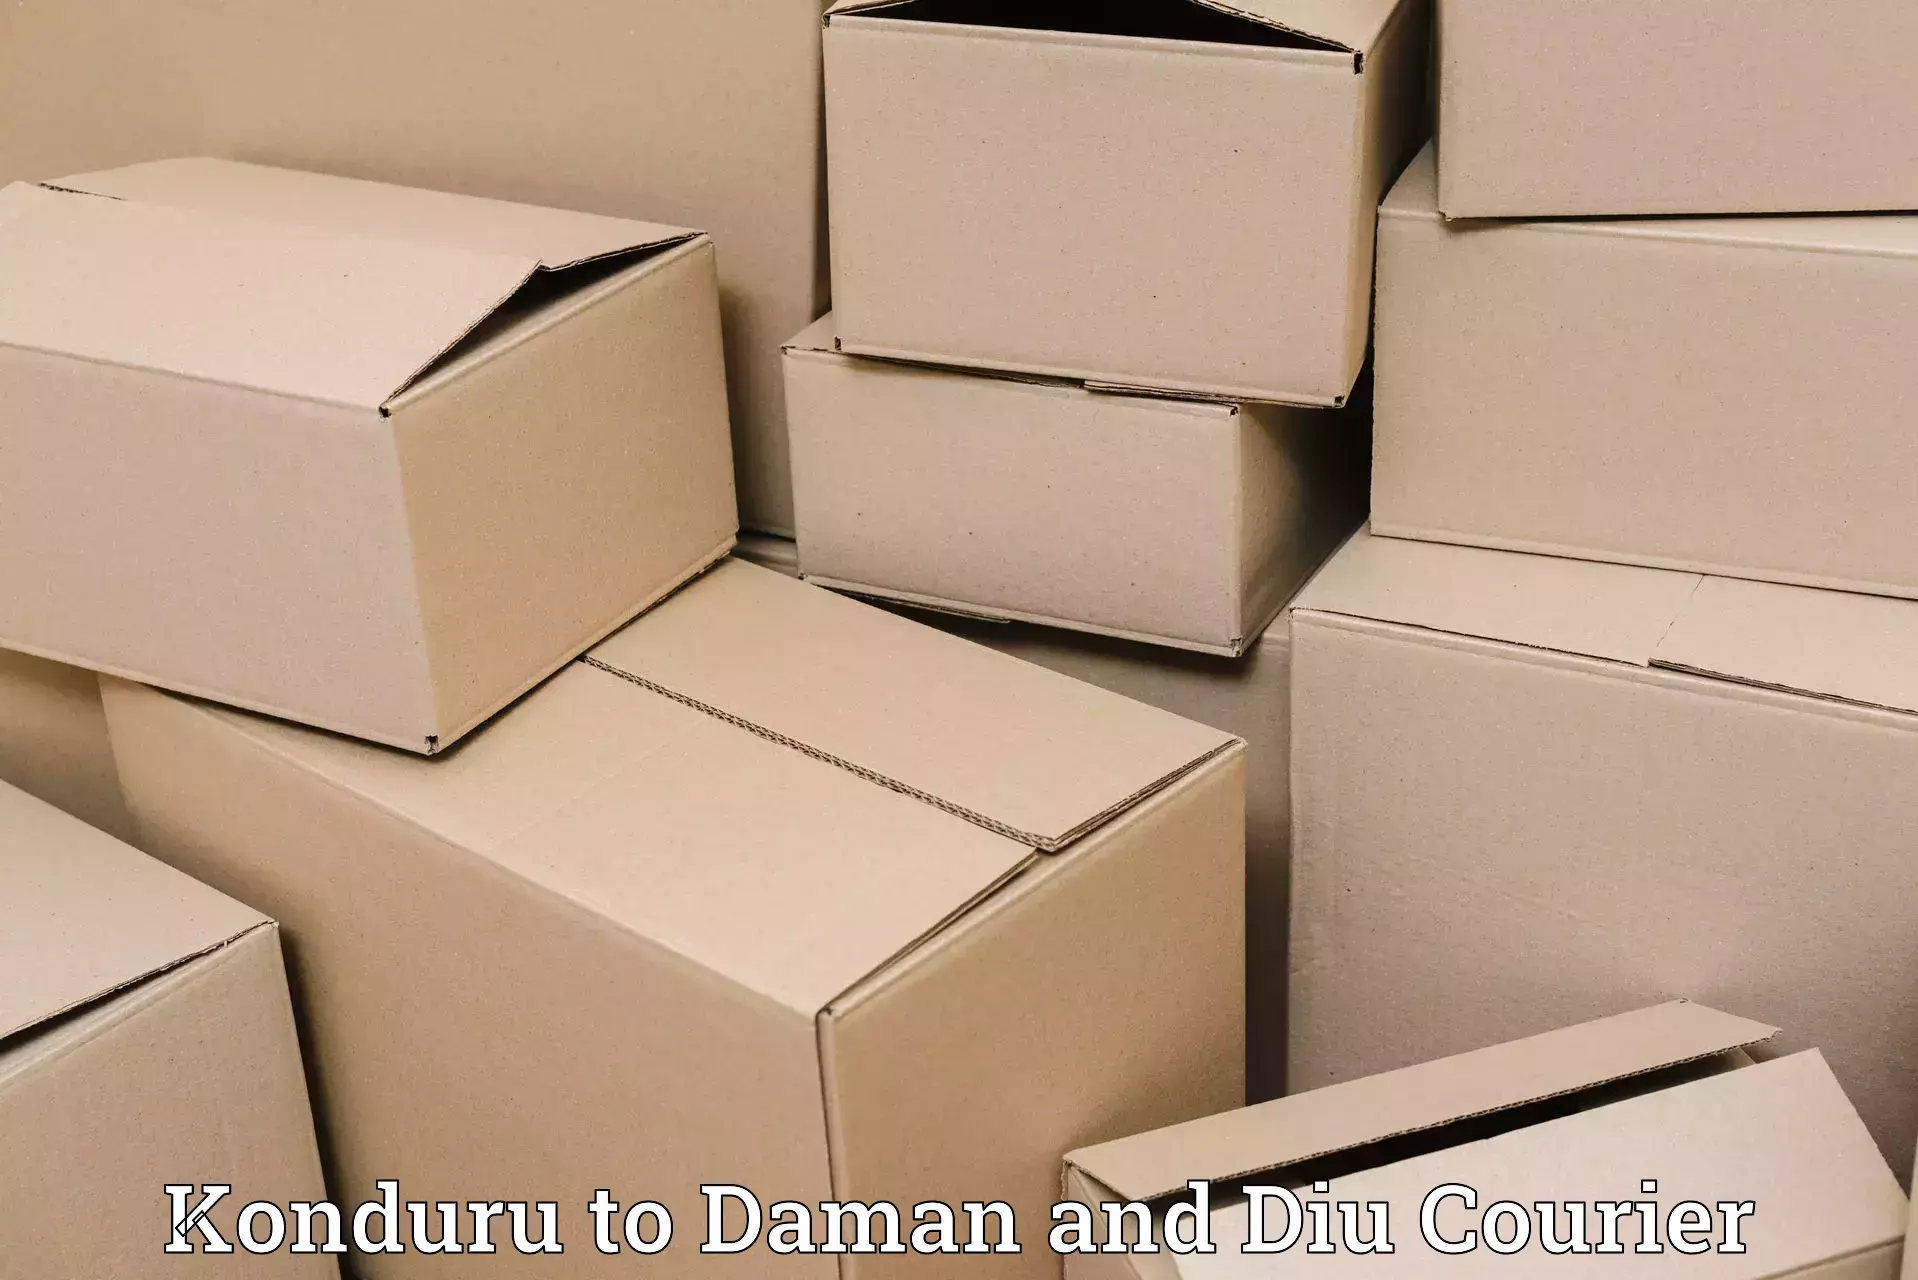 Parcel handling and care Konduru to Daman